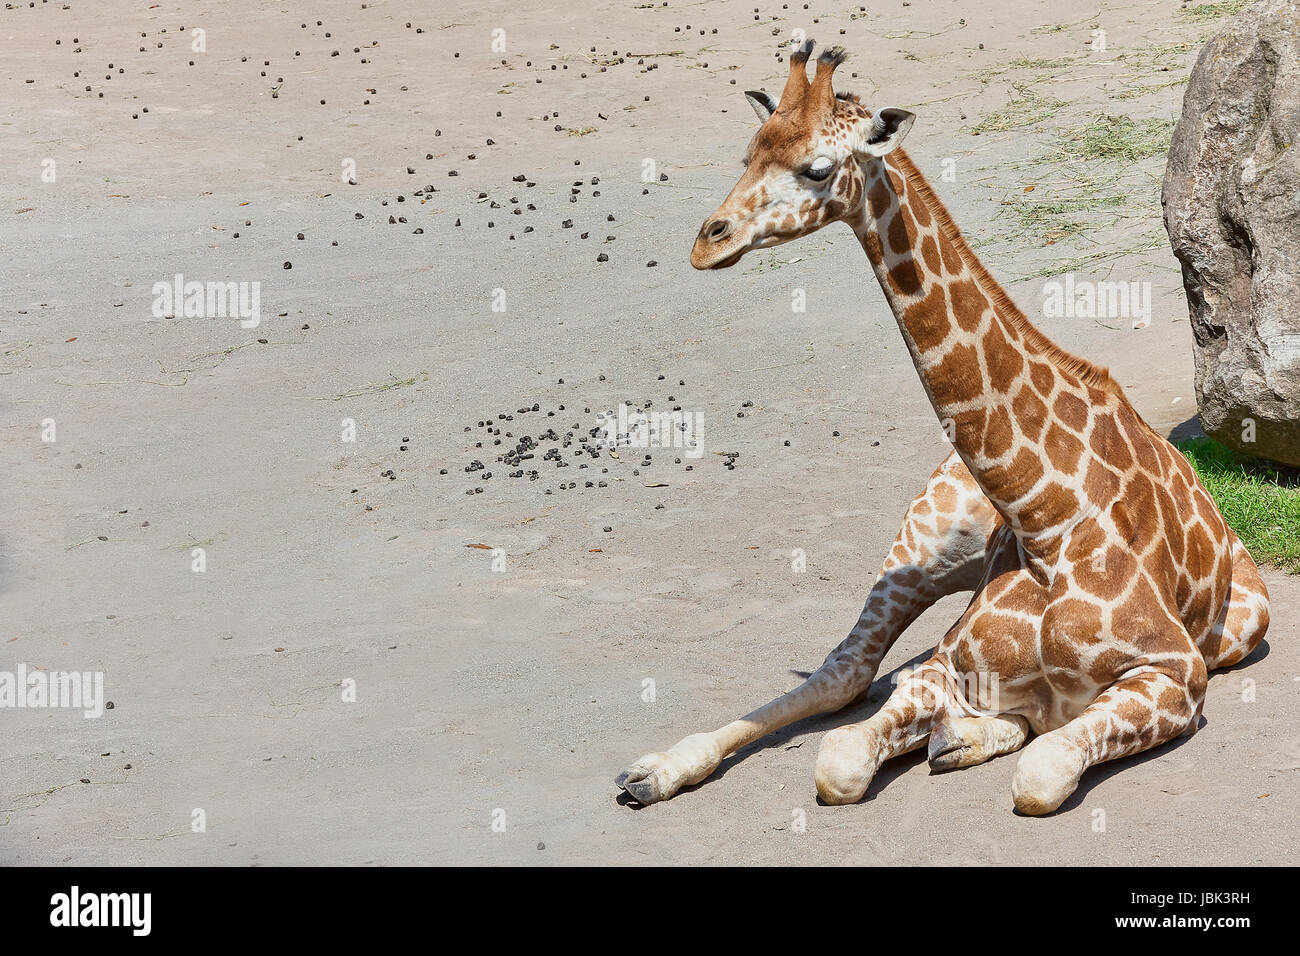 Bébé girafe assis sur le sol, la copie de l'espace disponible. Banque D'Images